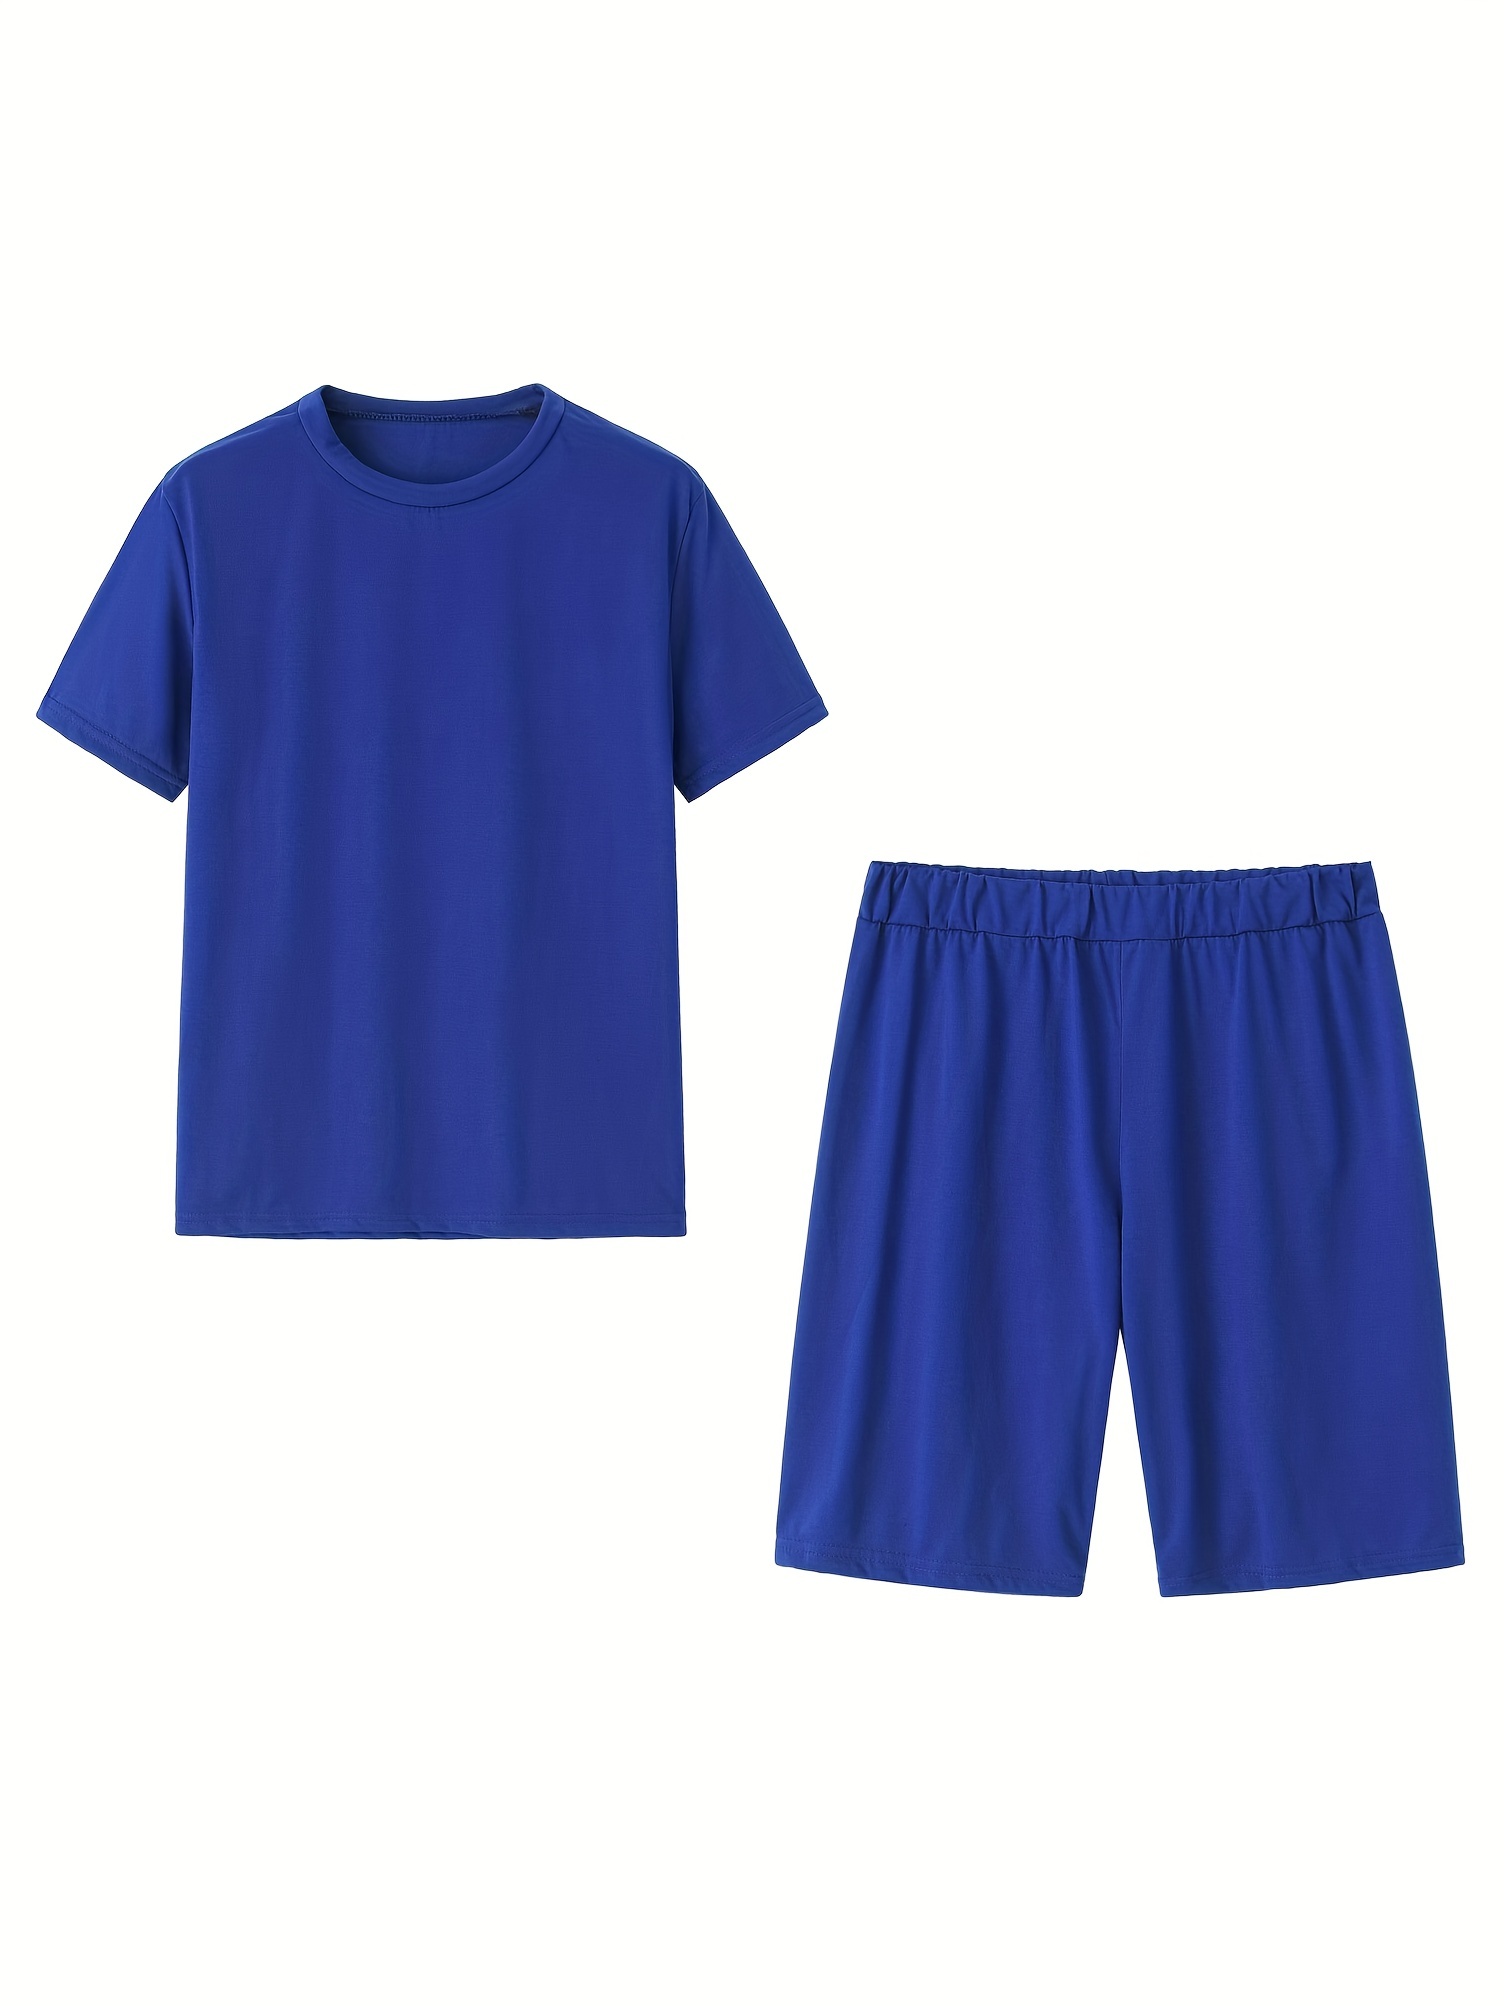 Casual Plain Bermuda Royal Blue Women's Shorts (Women's)